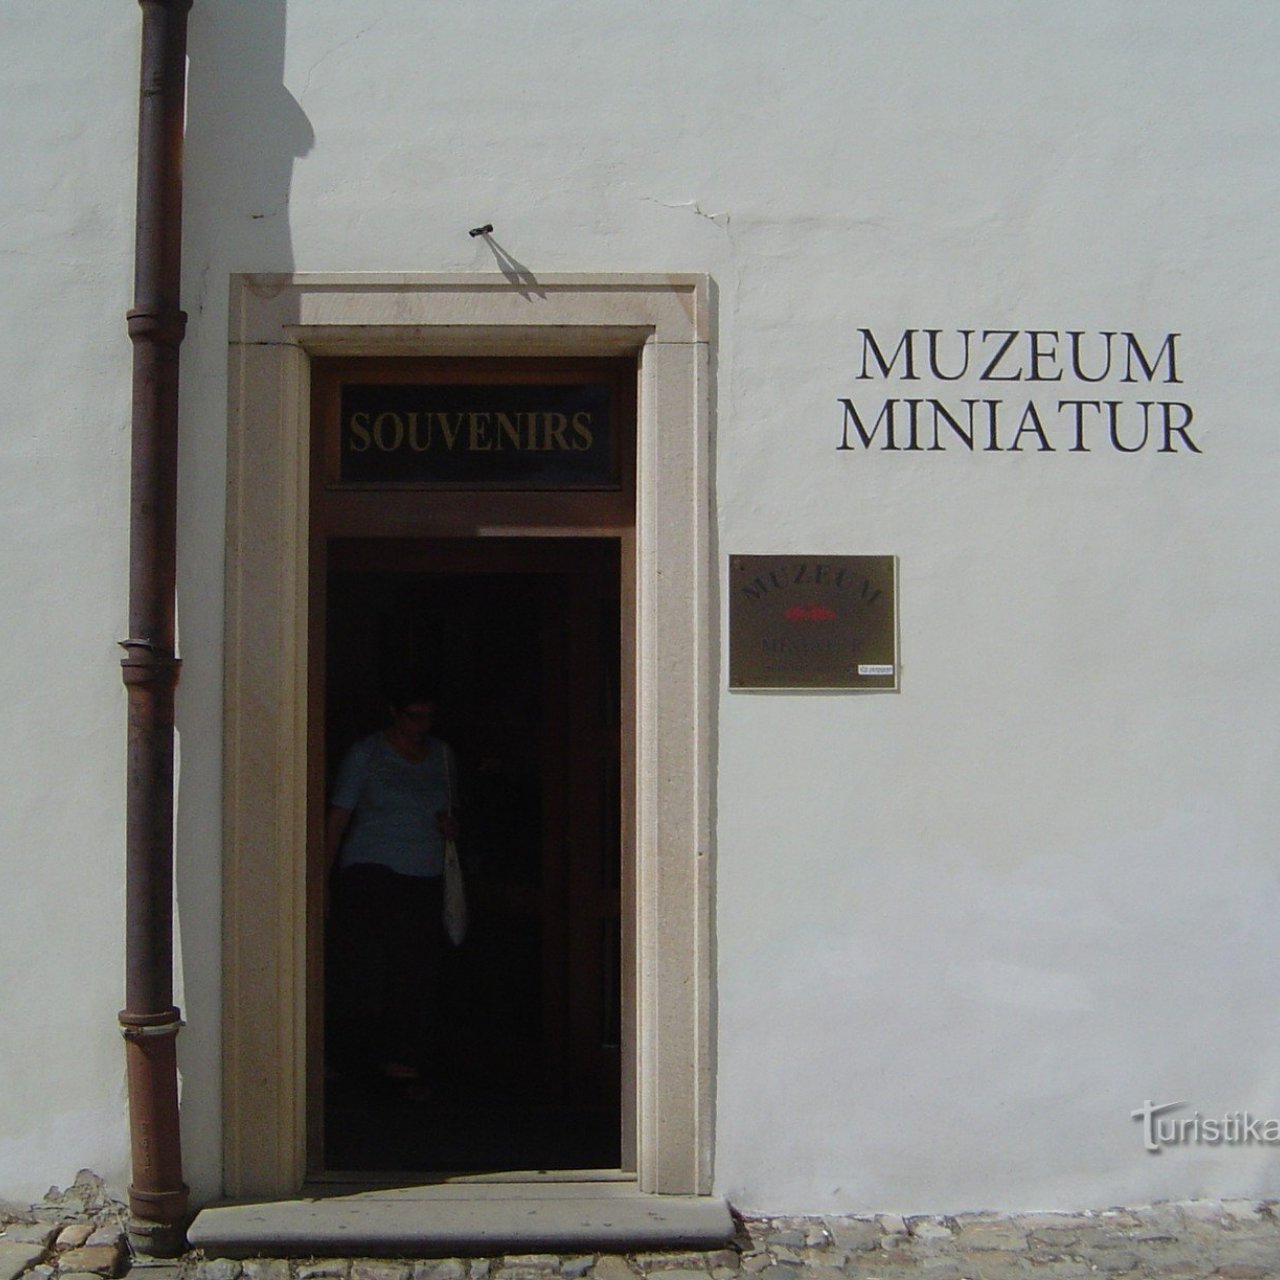 Muzeum miniatur v Praze